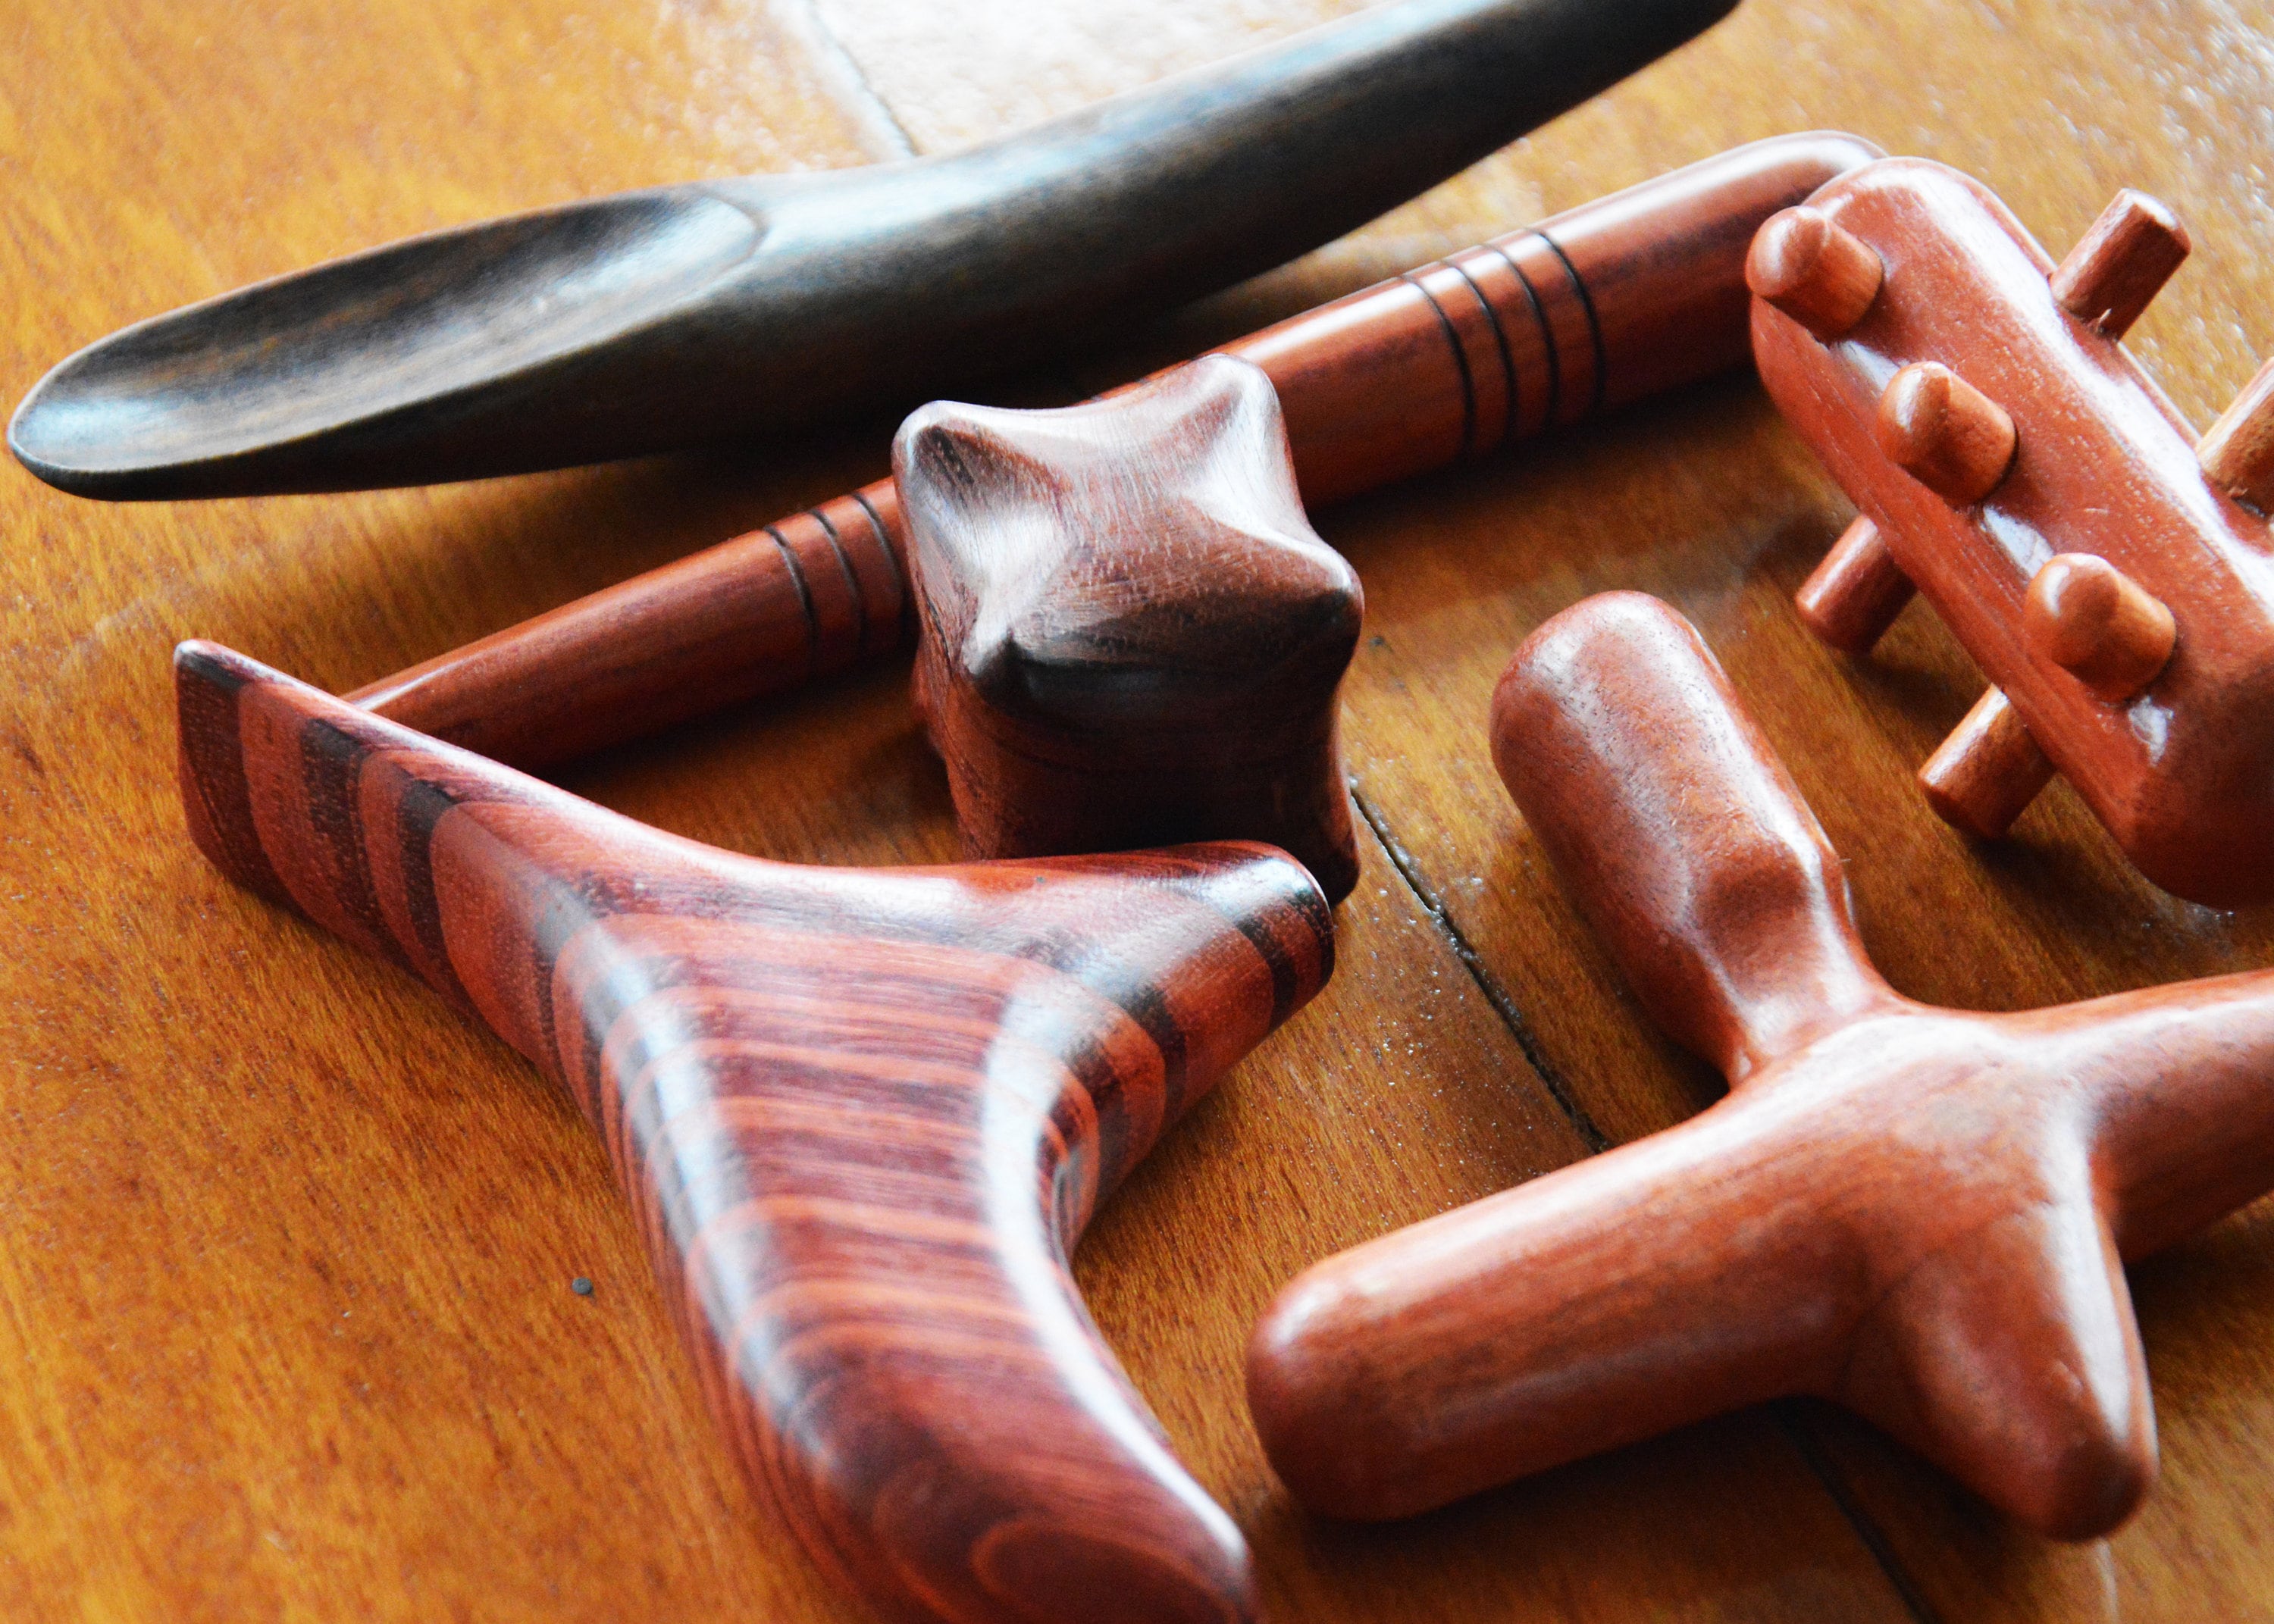 Reflexology Traditional Thai Massage Wooden Stick Tool Hand Head